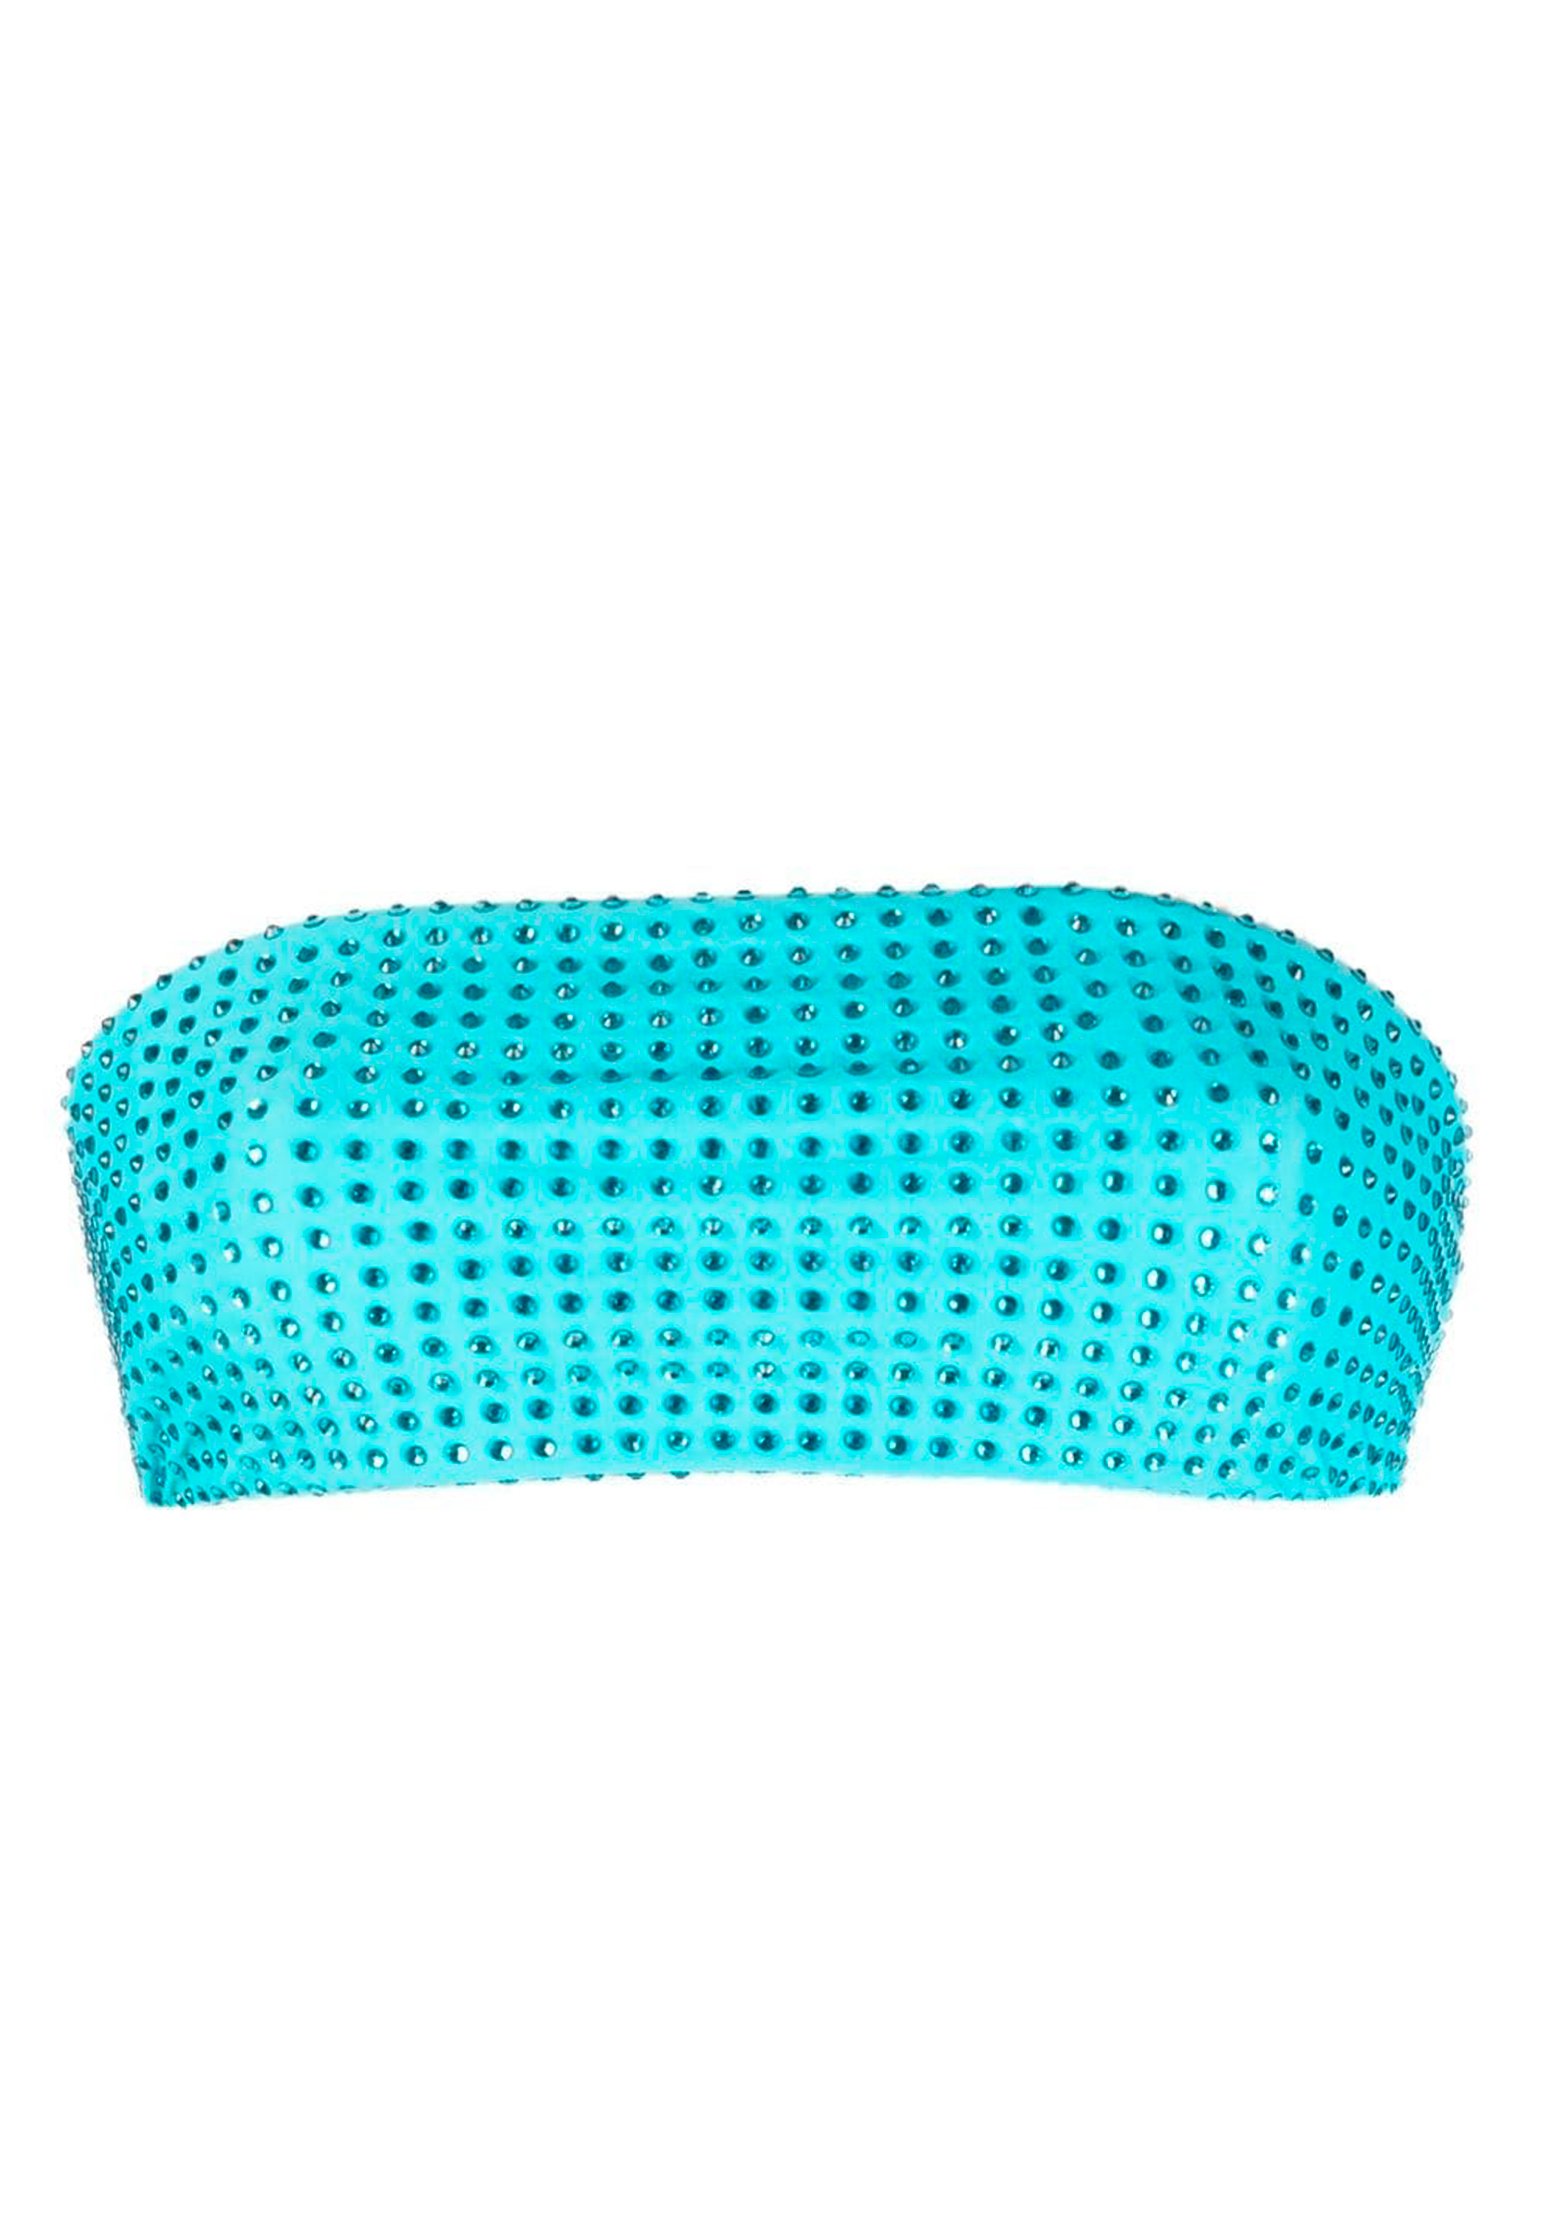 Bikini top SELF-PORTRAIT Color: blue (Code: 2242) in online store Allure